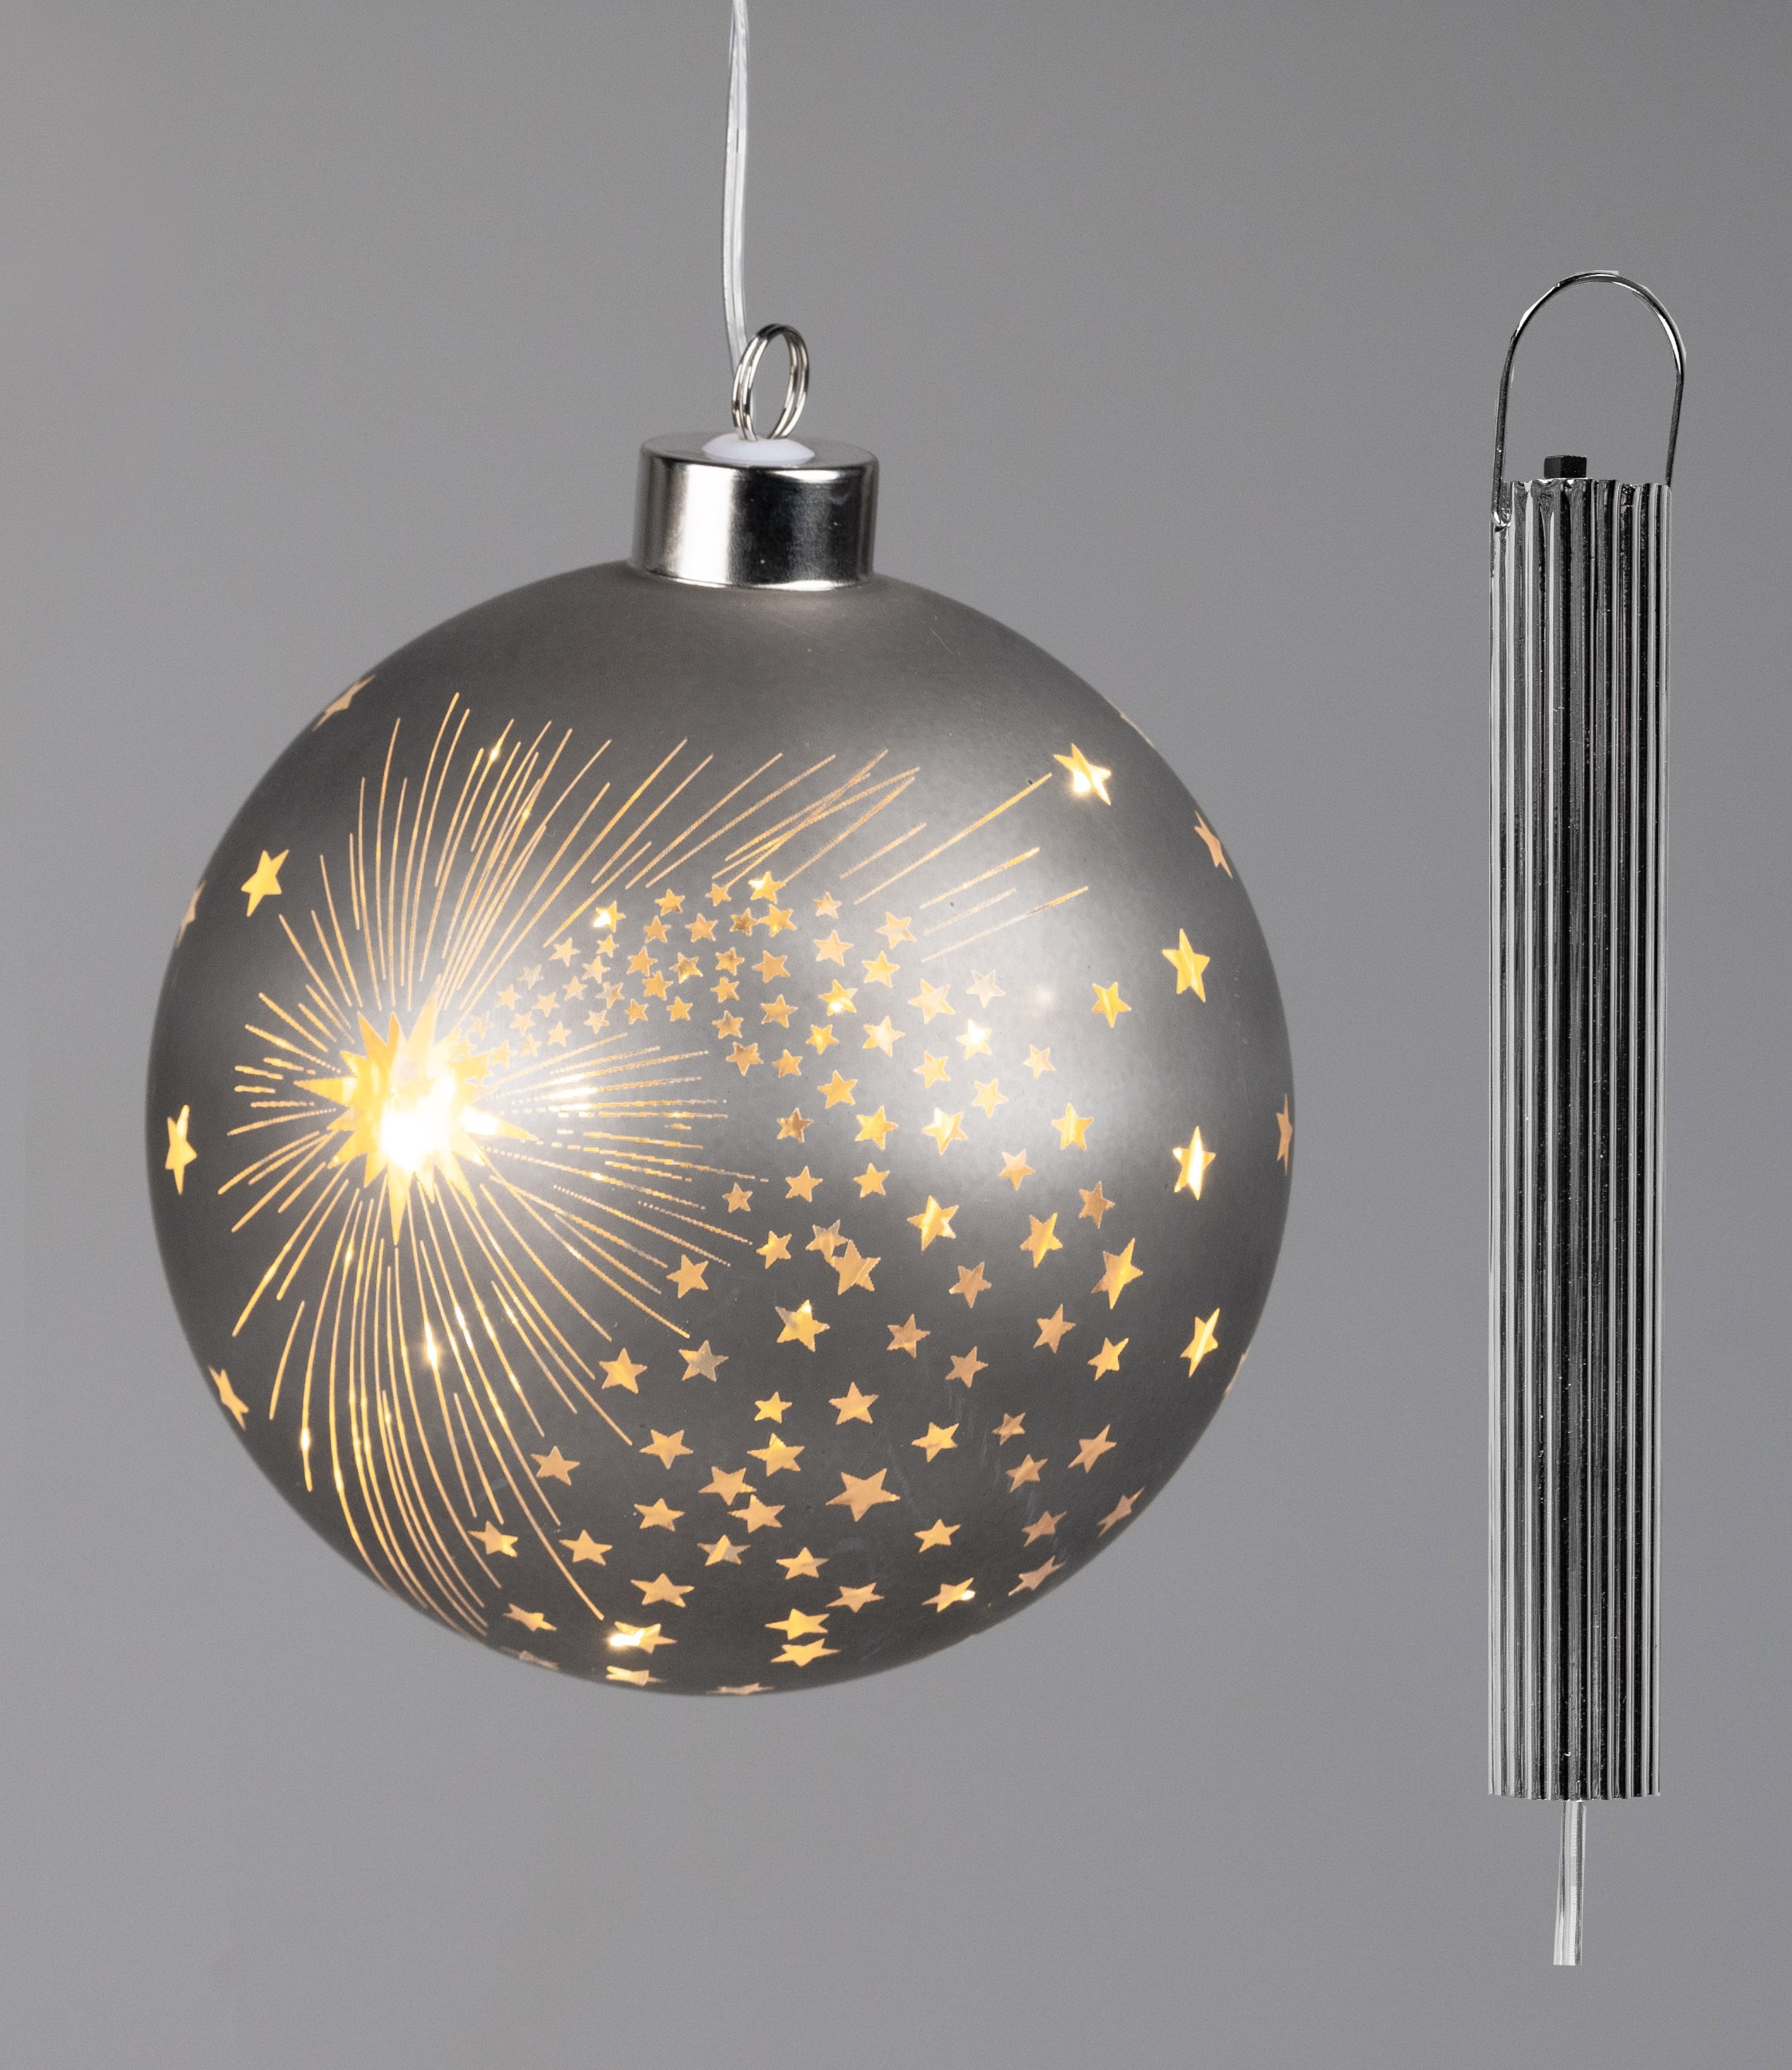 LED-Deko Kugel Ø 12cm SPIRIT mit Sternen + Timer zum hängen formano